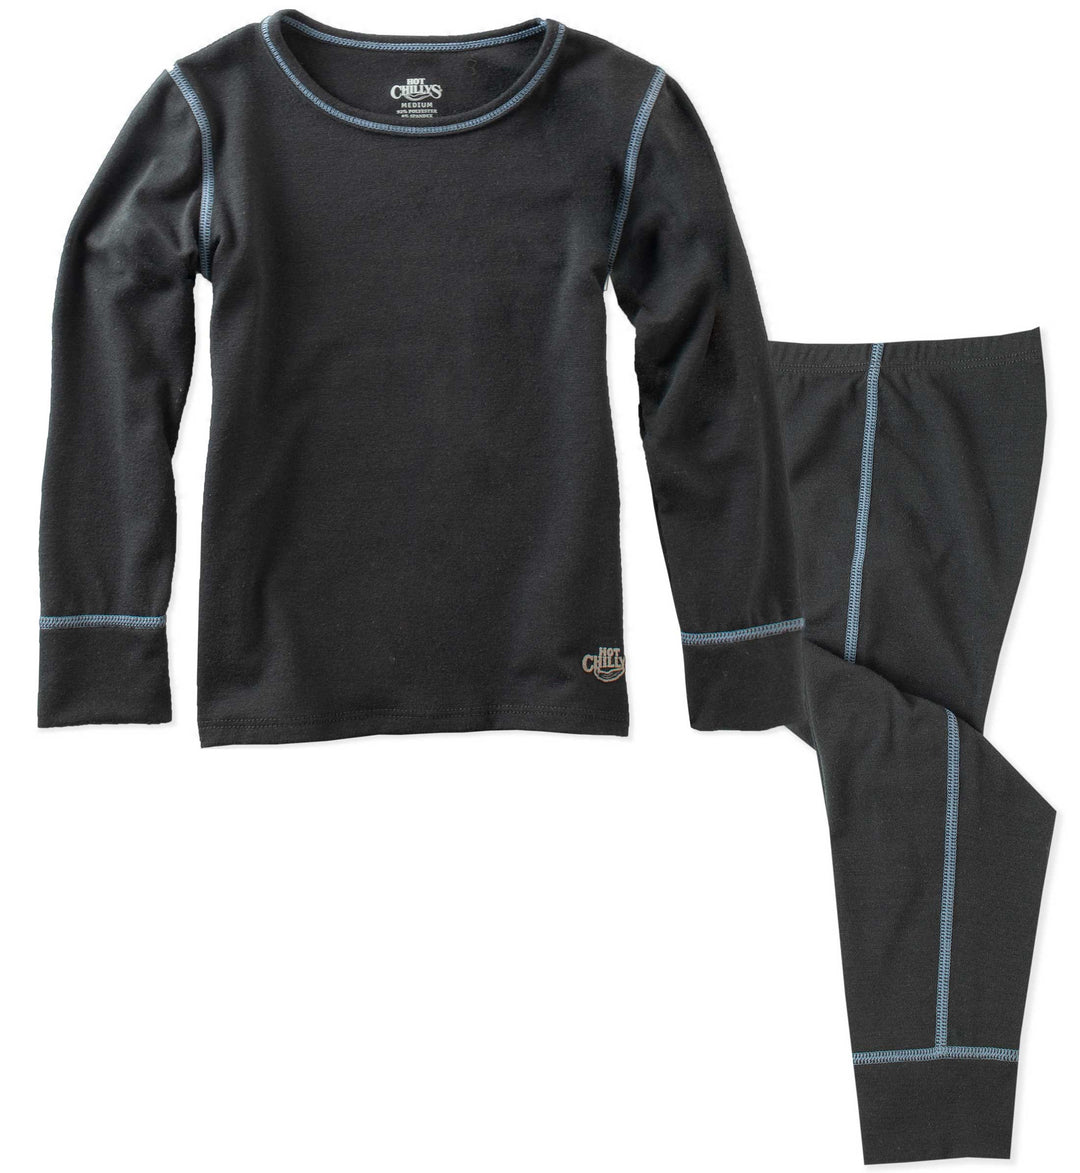 Fahrenheit Power Grid Micro Black Kids Thermal Underwear Set - 8062